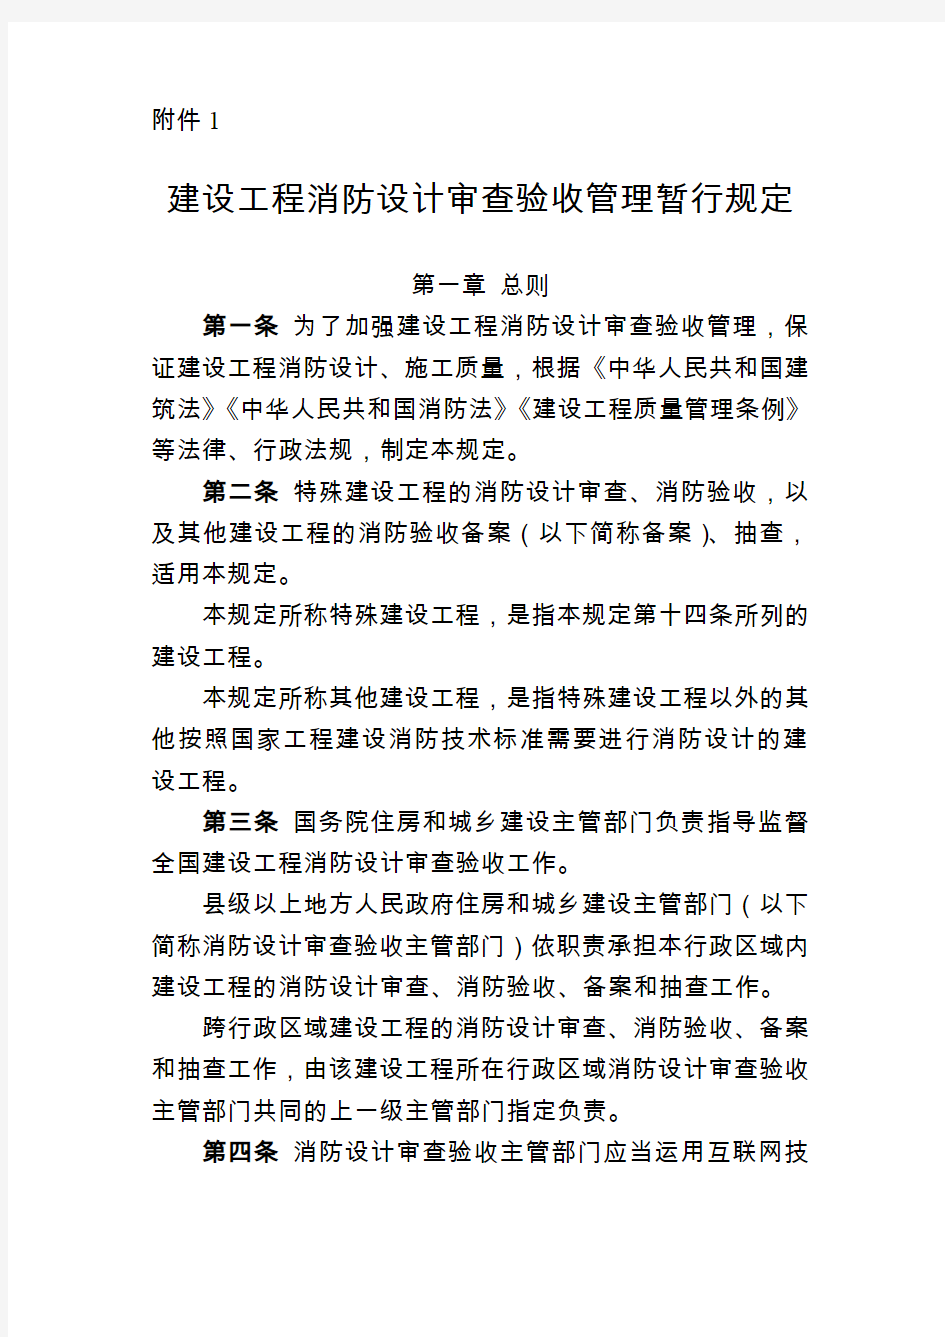 重庆建设工程消防设计审查验收管理暂行规定